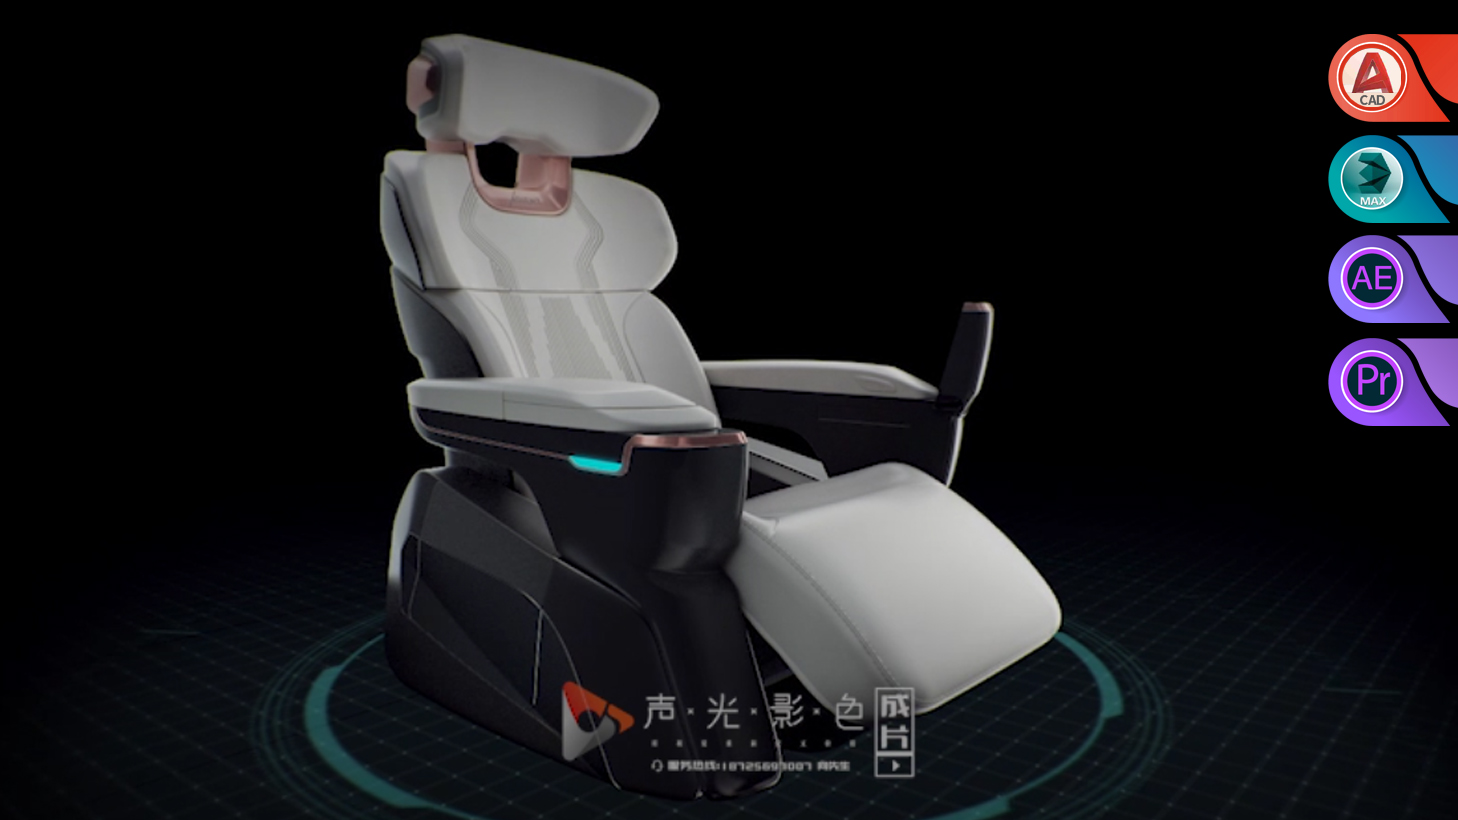 【三维产品动画篇】—延锋安道拓超级座椅三维产品动画演示